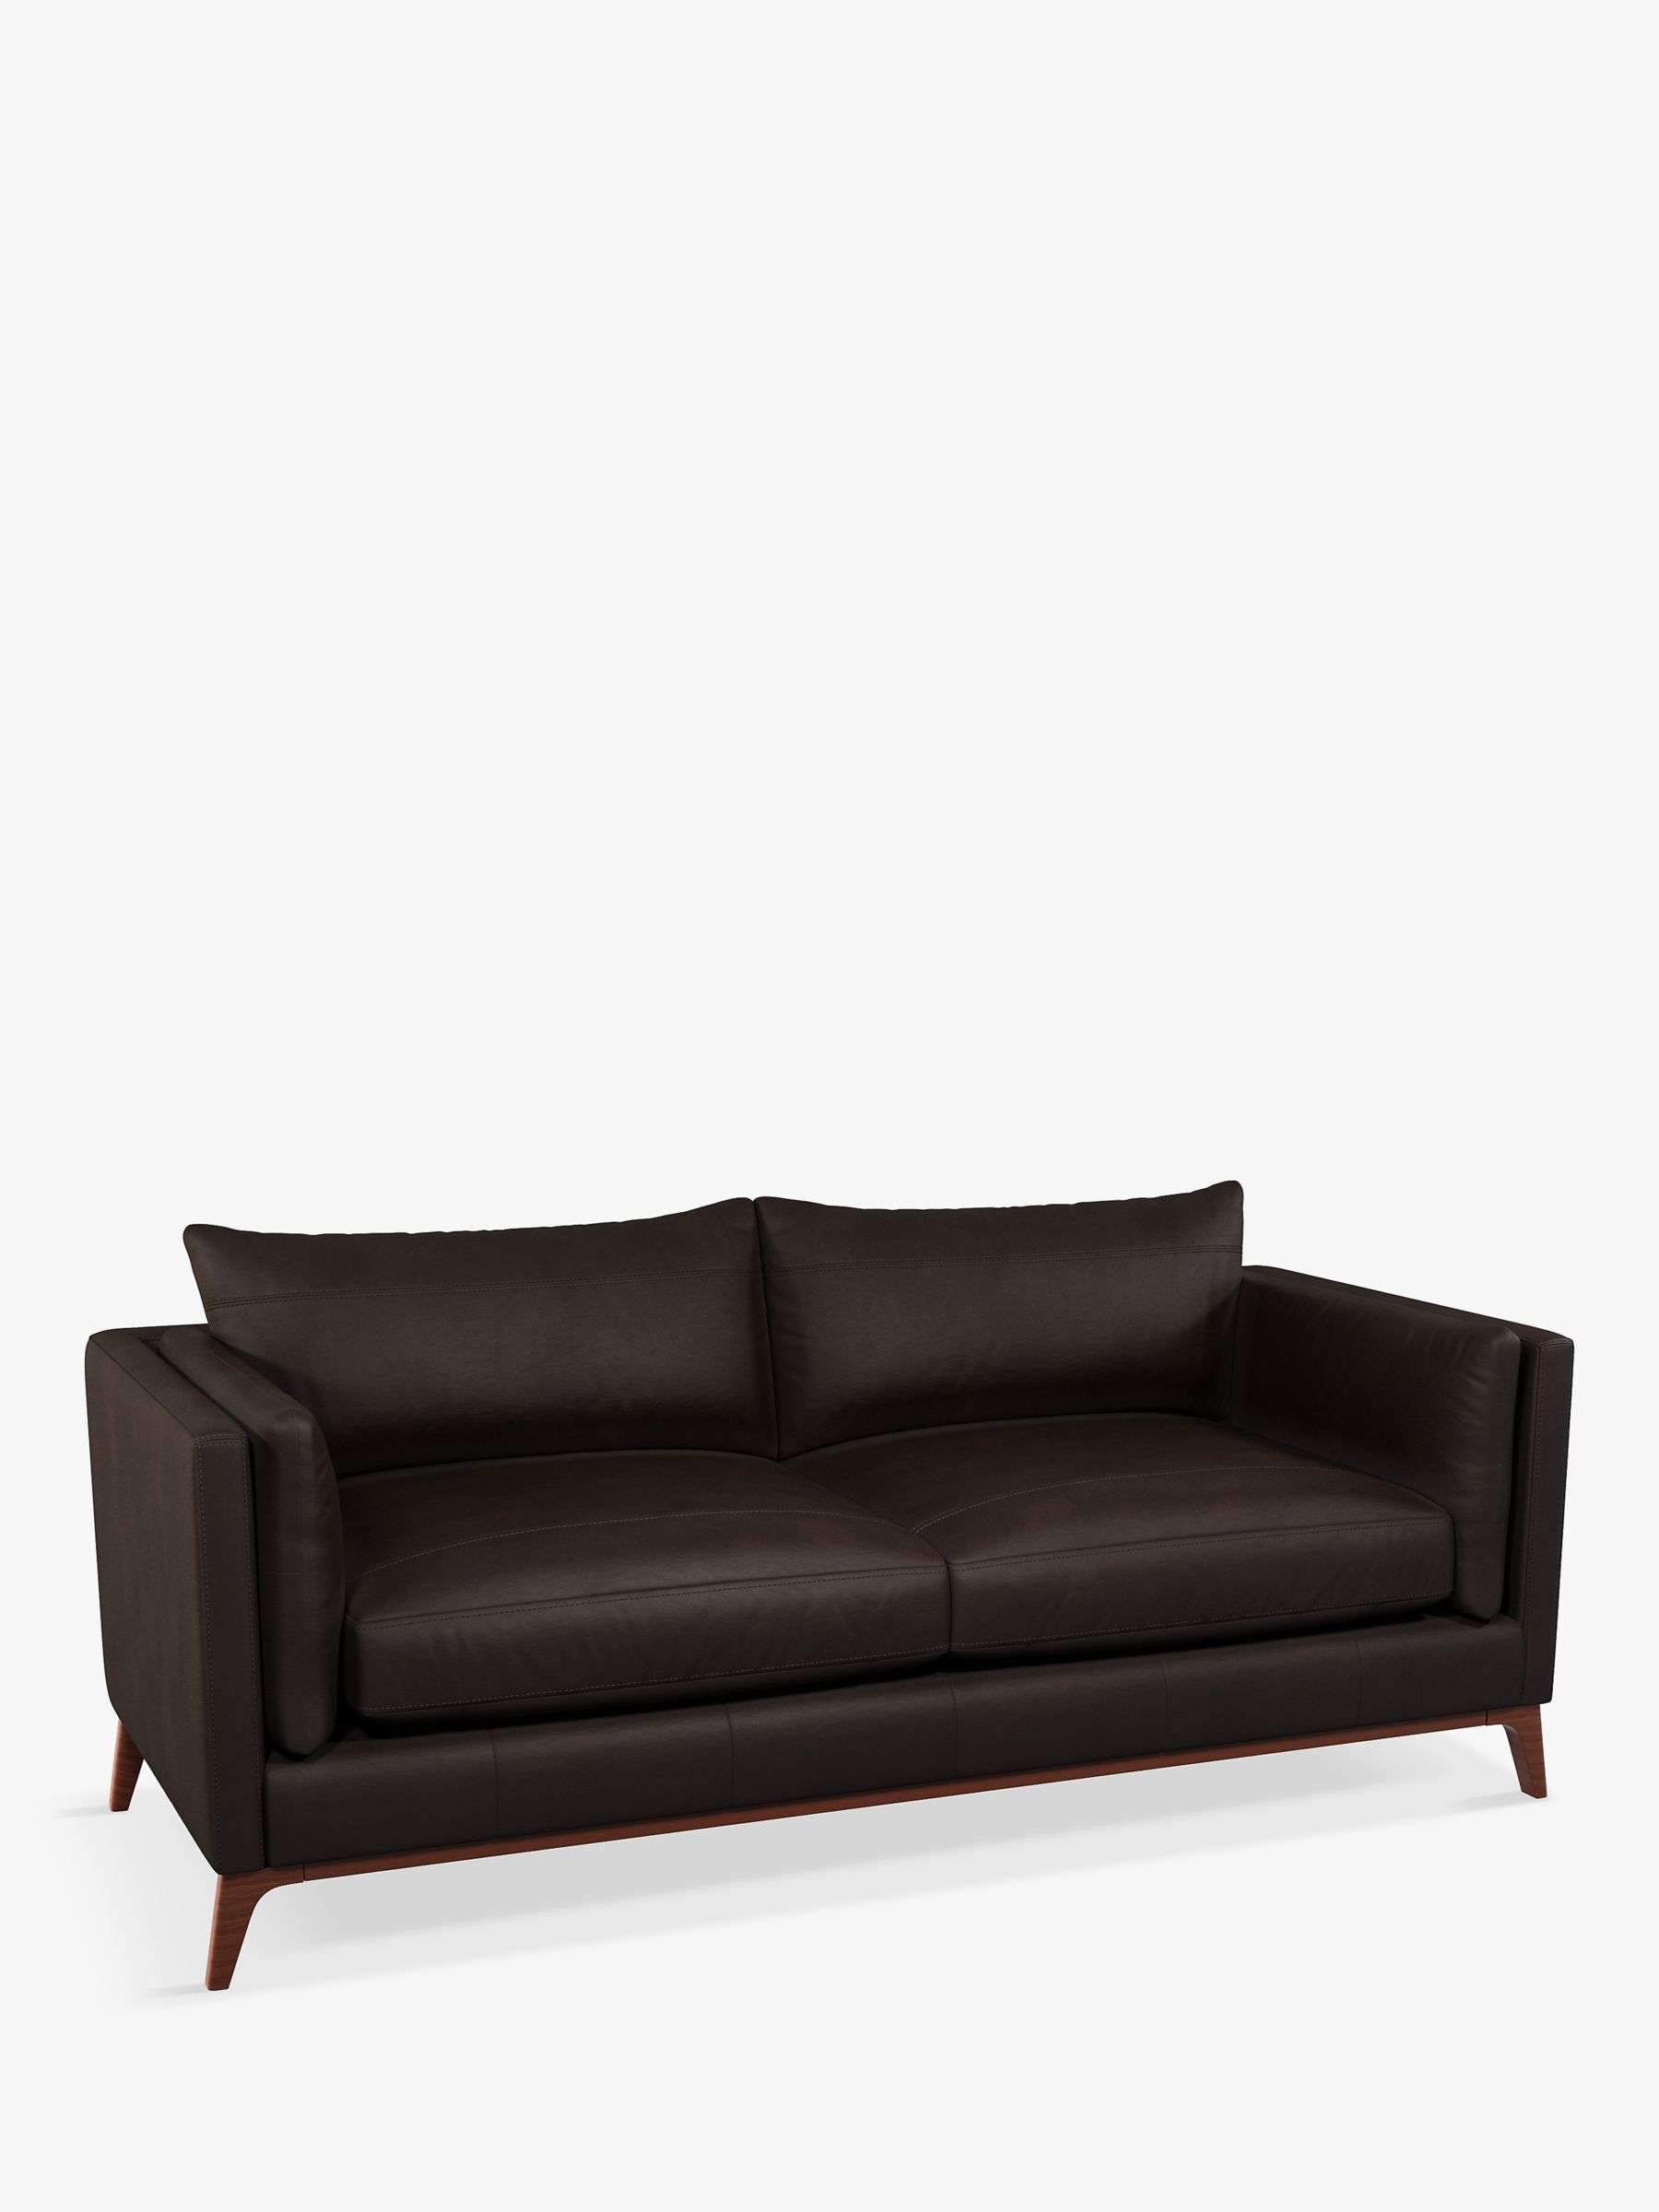 John Lewis Trim Large 3 Seater Leather Sofa, Dark Leg